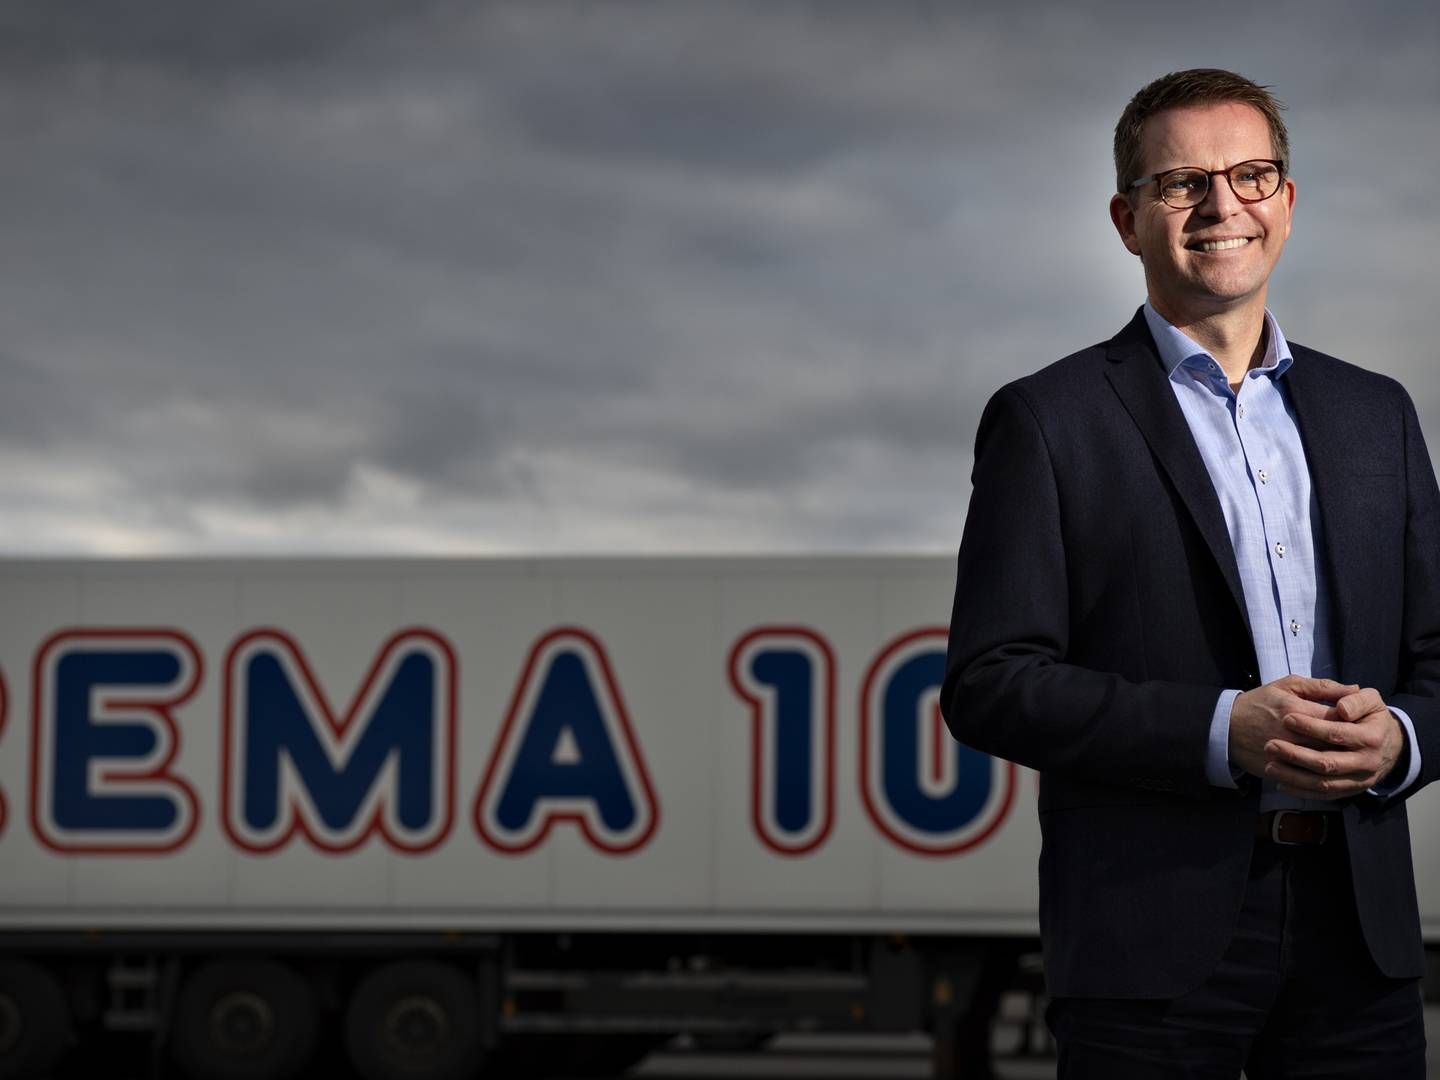 Henrik Burkal er adm. direktør for Rema 1000 Danmark med knap 400 discountbutikker i Danmark. | Foto: Brian Karmark/ERH